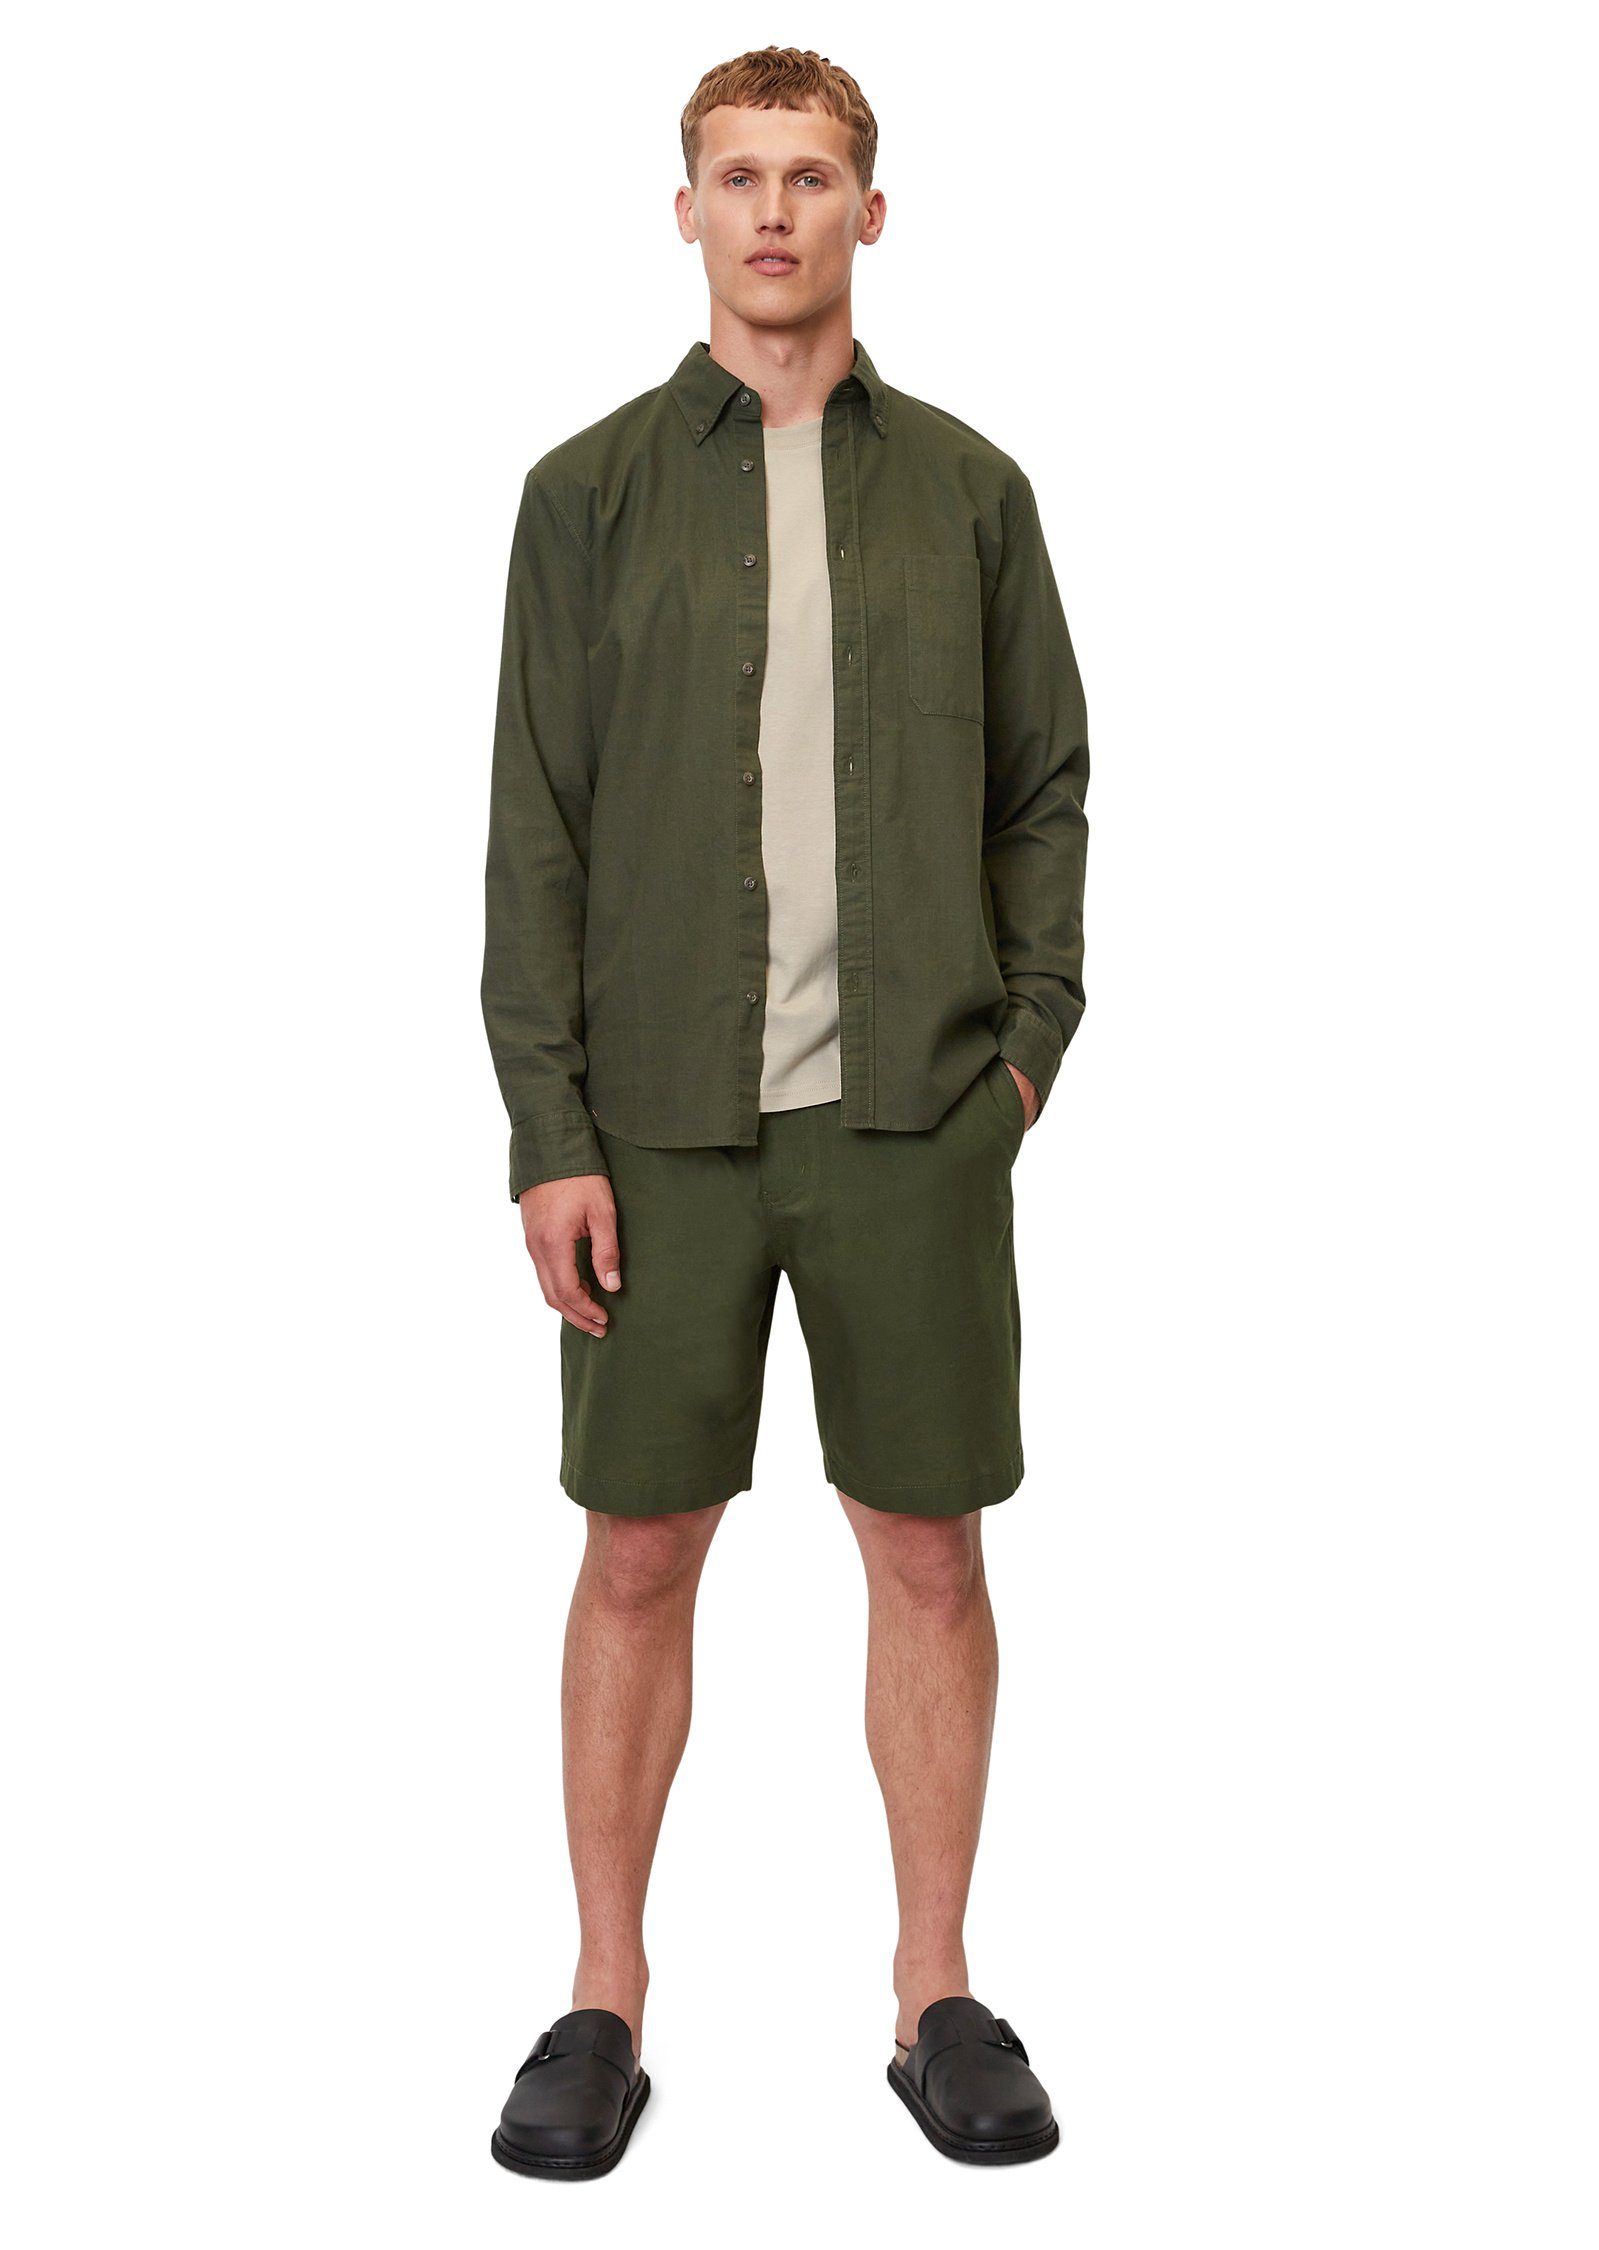 Leinen Shorts aus Marc und O'Polo Bio-Baumwolle grün